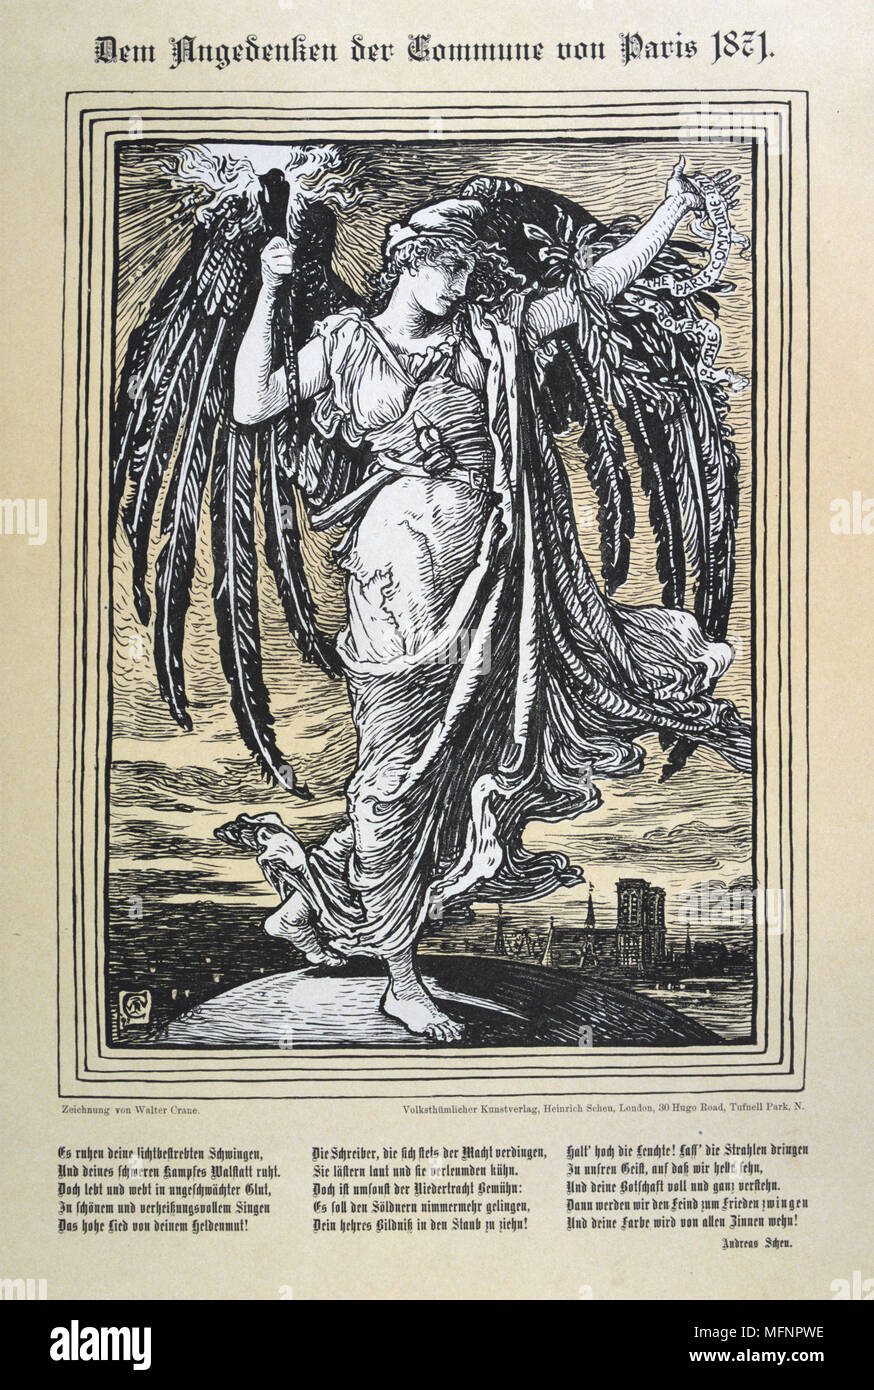 Allegorische Darstellung der Engel der Pariser Kommune (26. März-28 Mai 1871). Abbildung von Walter Crane (1845-1915), englischer Künstler, in Deutschland veröffentlicht. Stockfoto